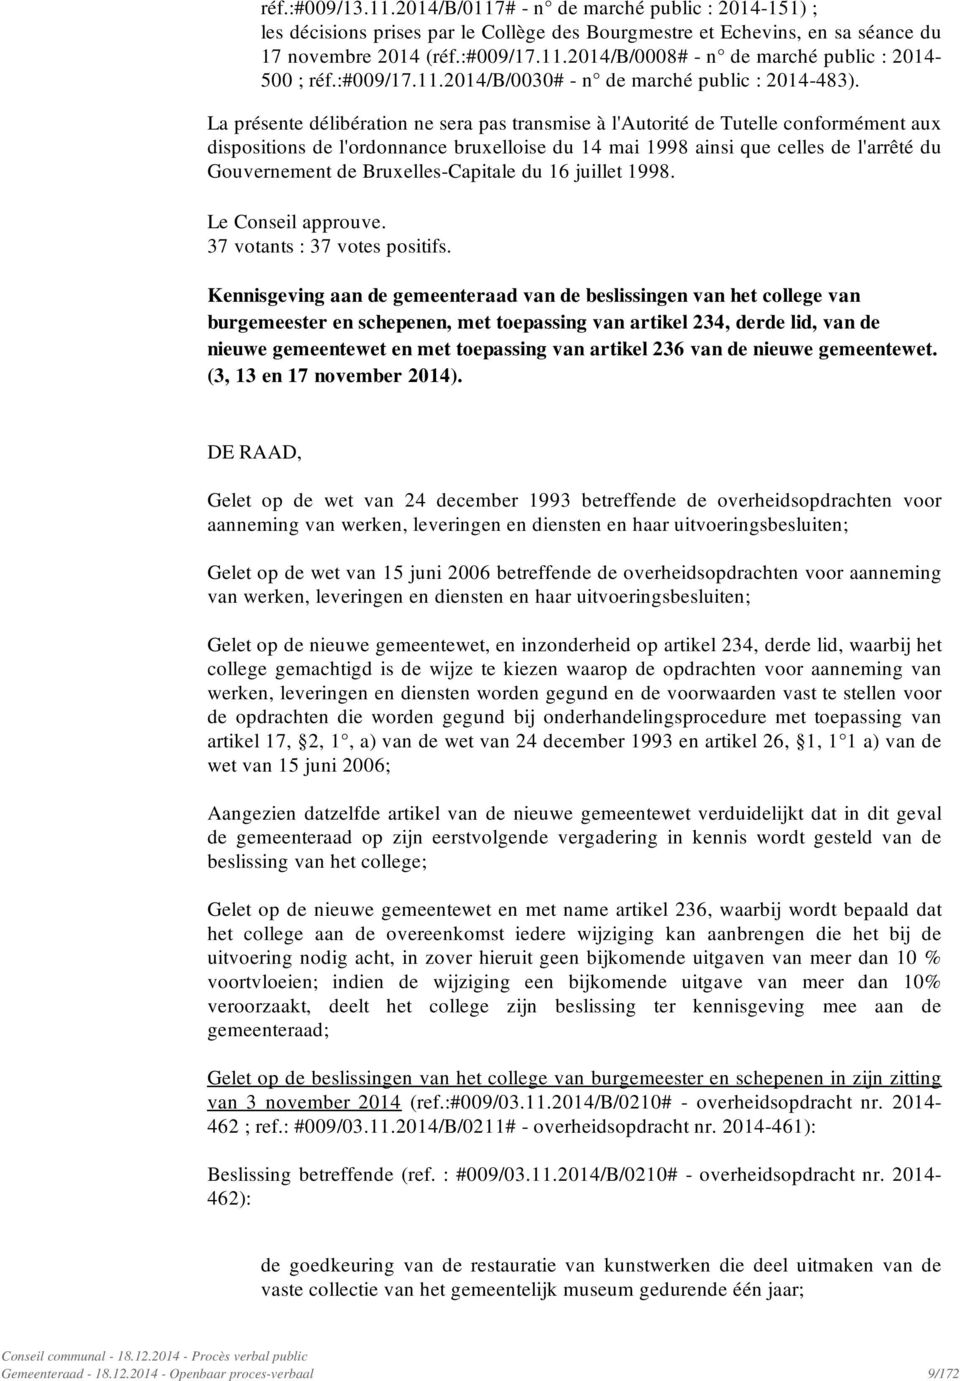 La présente délibération ne sera pas transmise à l'autorité de Tutelle conformément aux dispositions de l'ordonnance bruxelloise du 14 mai 1998 ainsi que celles de l'arrêté du Gouvernement de